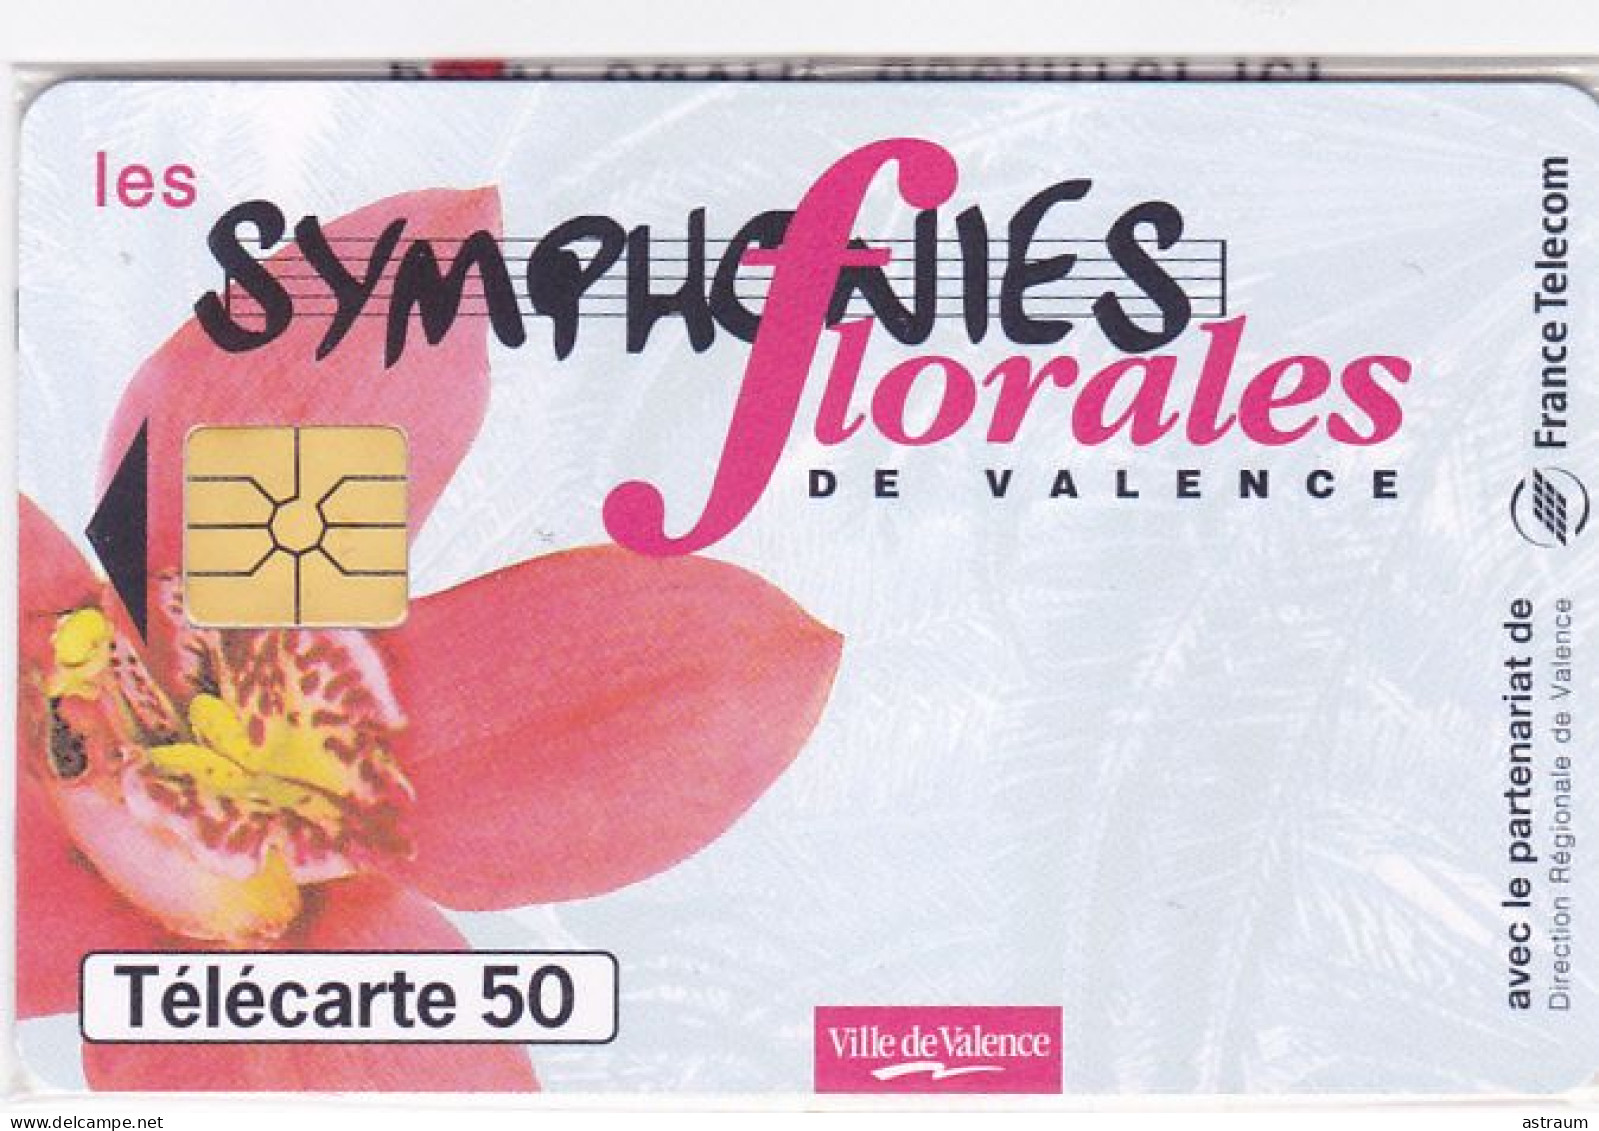 Telecarte Privée / Publique En1634 NSB - Symphonies Florales De Valence - 50 U - Gem - 1997 - 50 Unités   